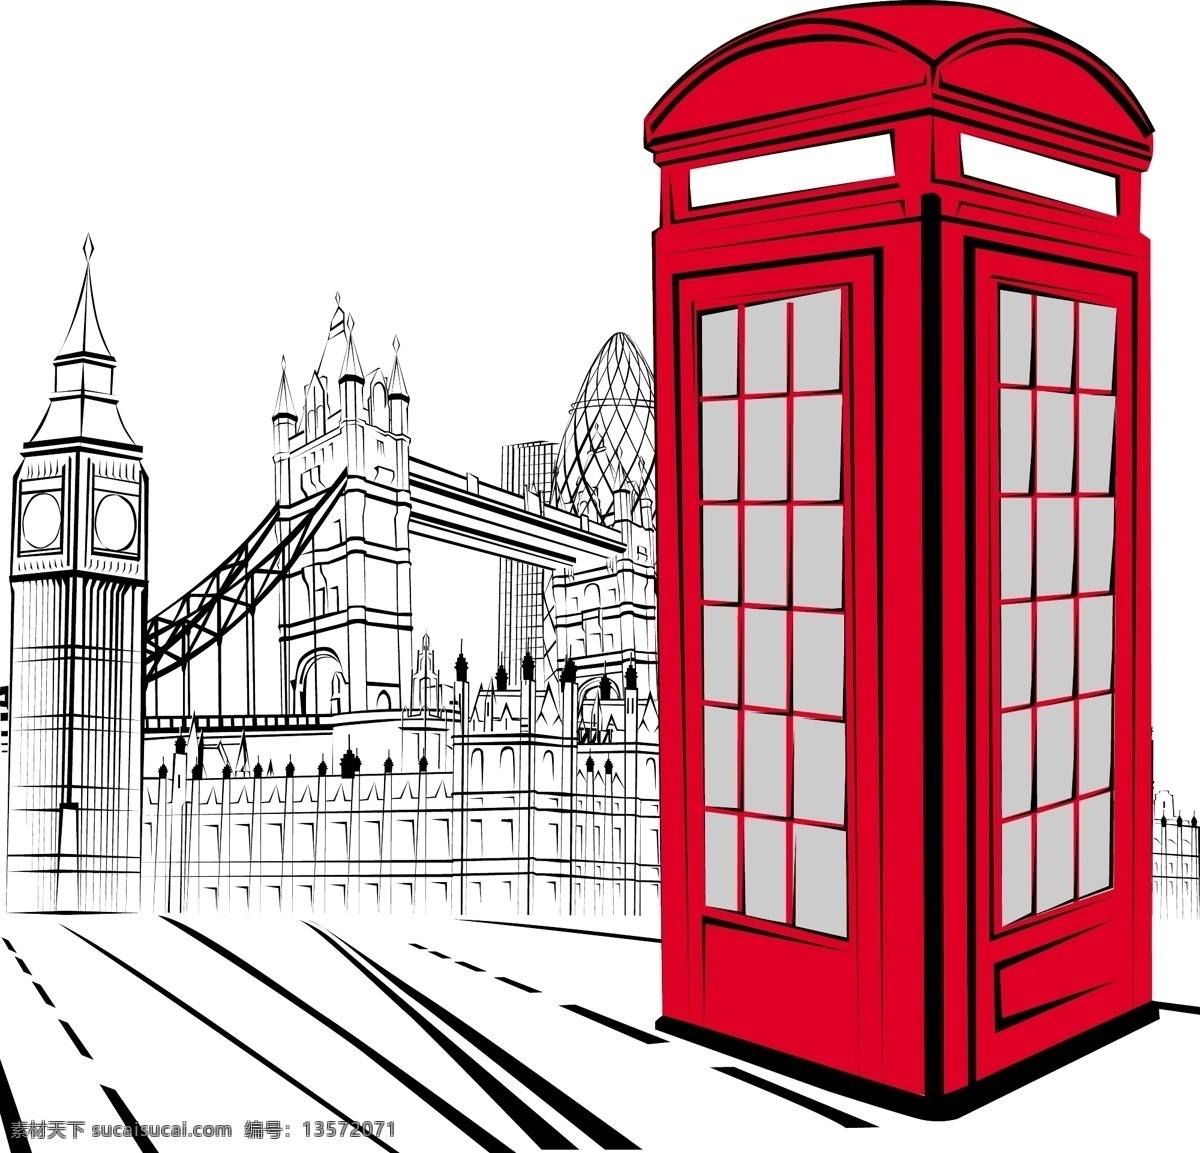 英国 建筑 矢量 合集 红色 矢量素材 设计素材 电话亭